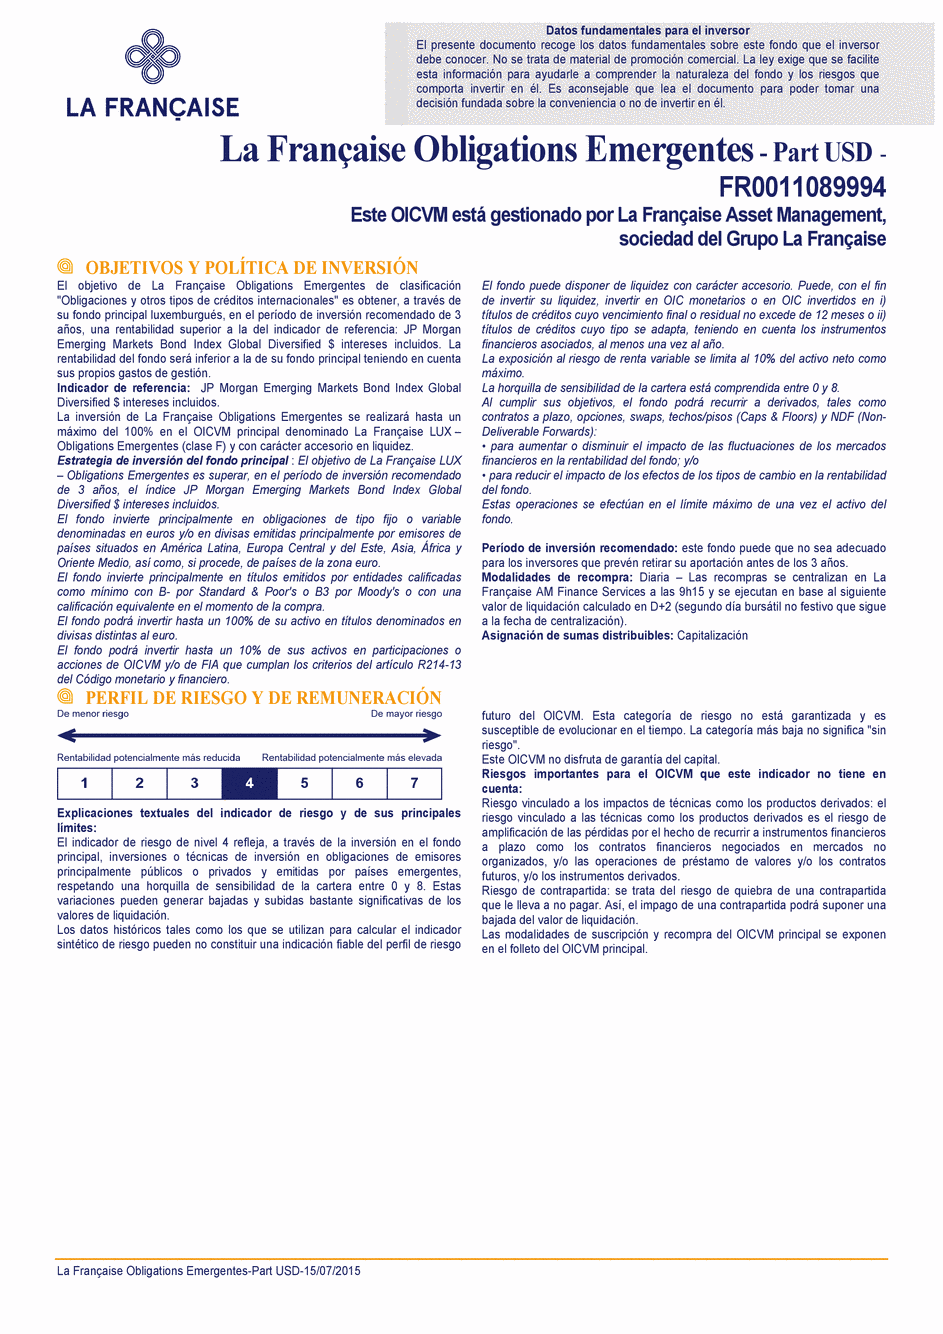 DICI La Française Obligations Emergentes - Part USD - 15/07/2015 - Espagnol